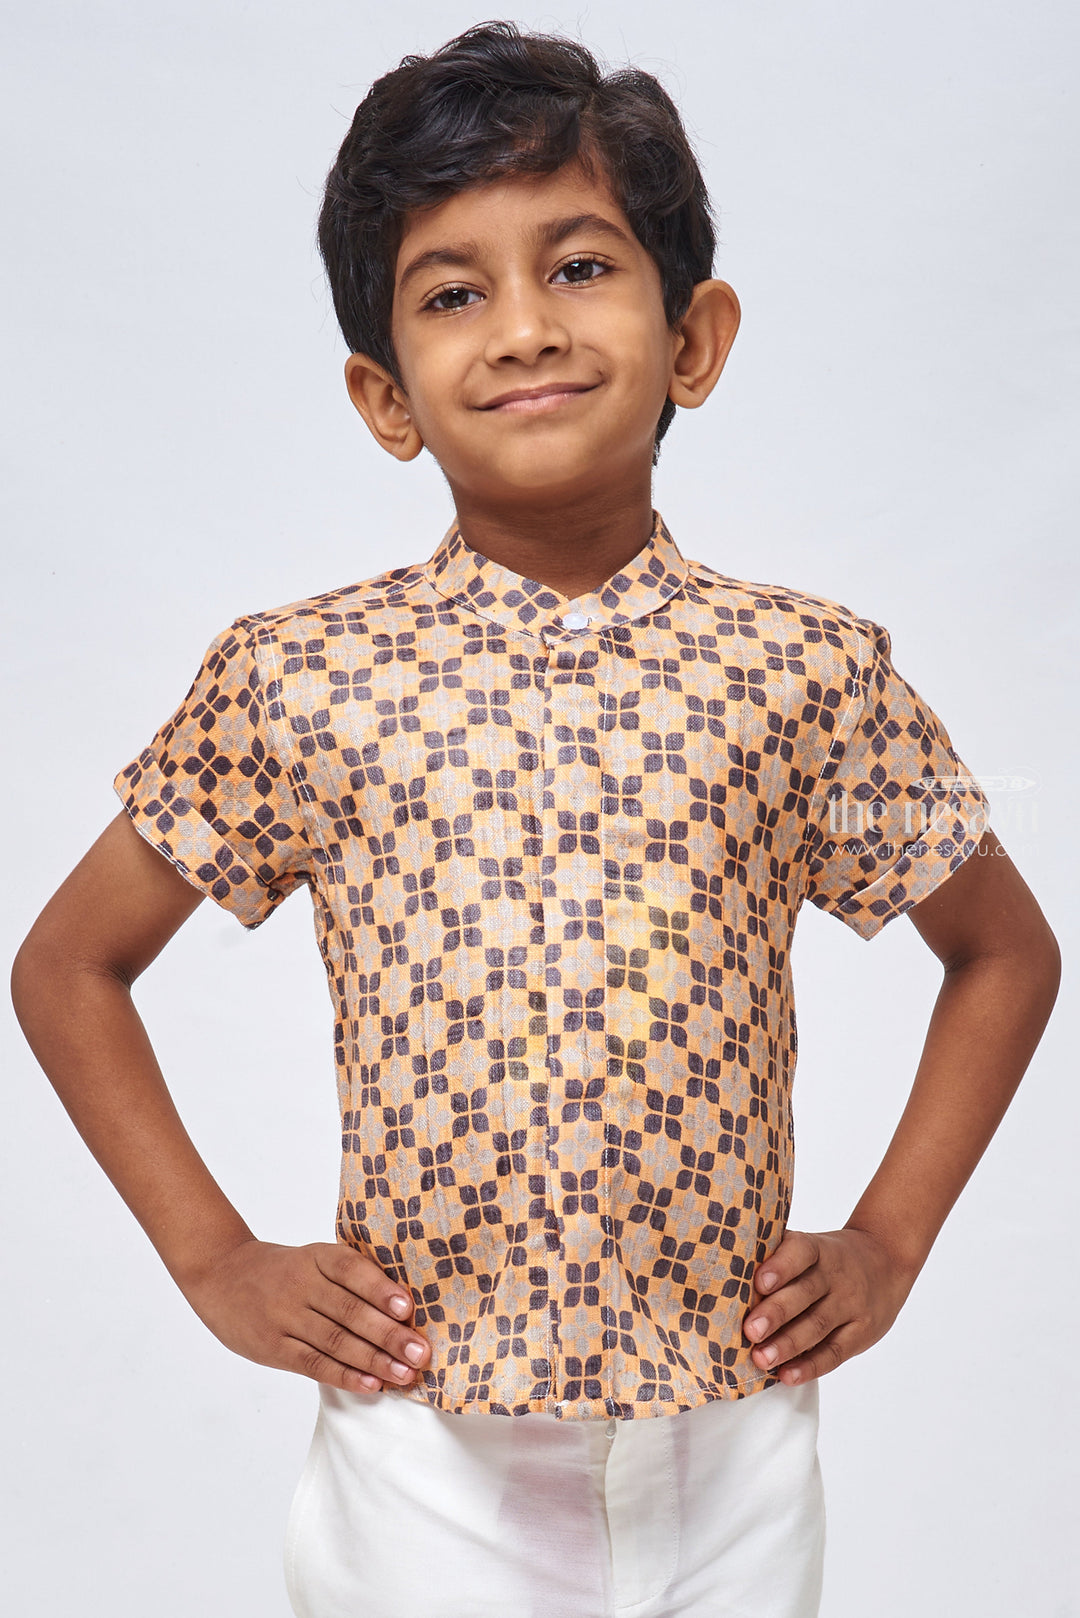 The Nesavu Boys Linen Shirt Karaikudi Chettinad Tile Inspires Print Boys Linen Shirt for a Free-Spirited Look Nesavu 14 (6M) / Yellow / Linen BS072-14 Tile-Inspired Printed Boys Linen Shirt | Kids Printed Shirt | The Nesavu